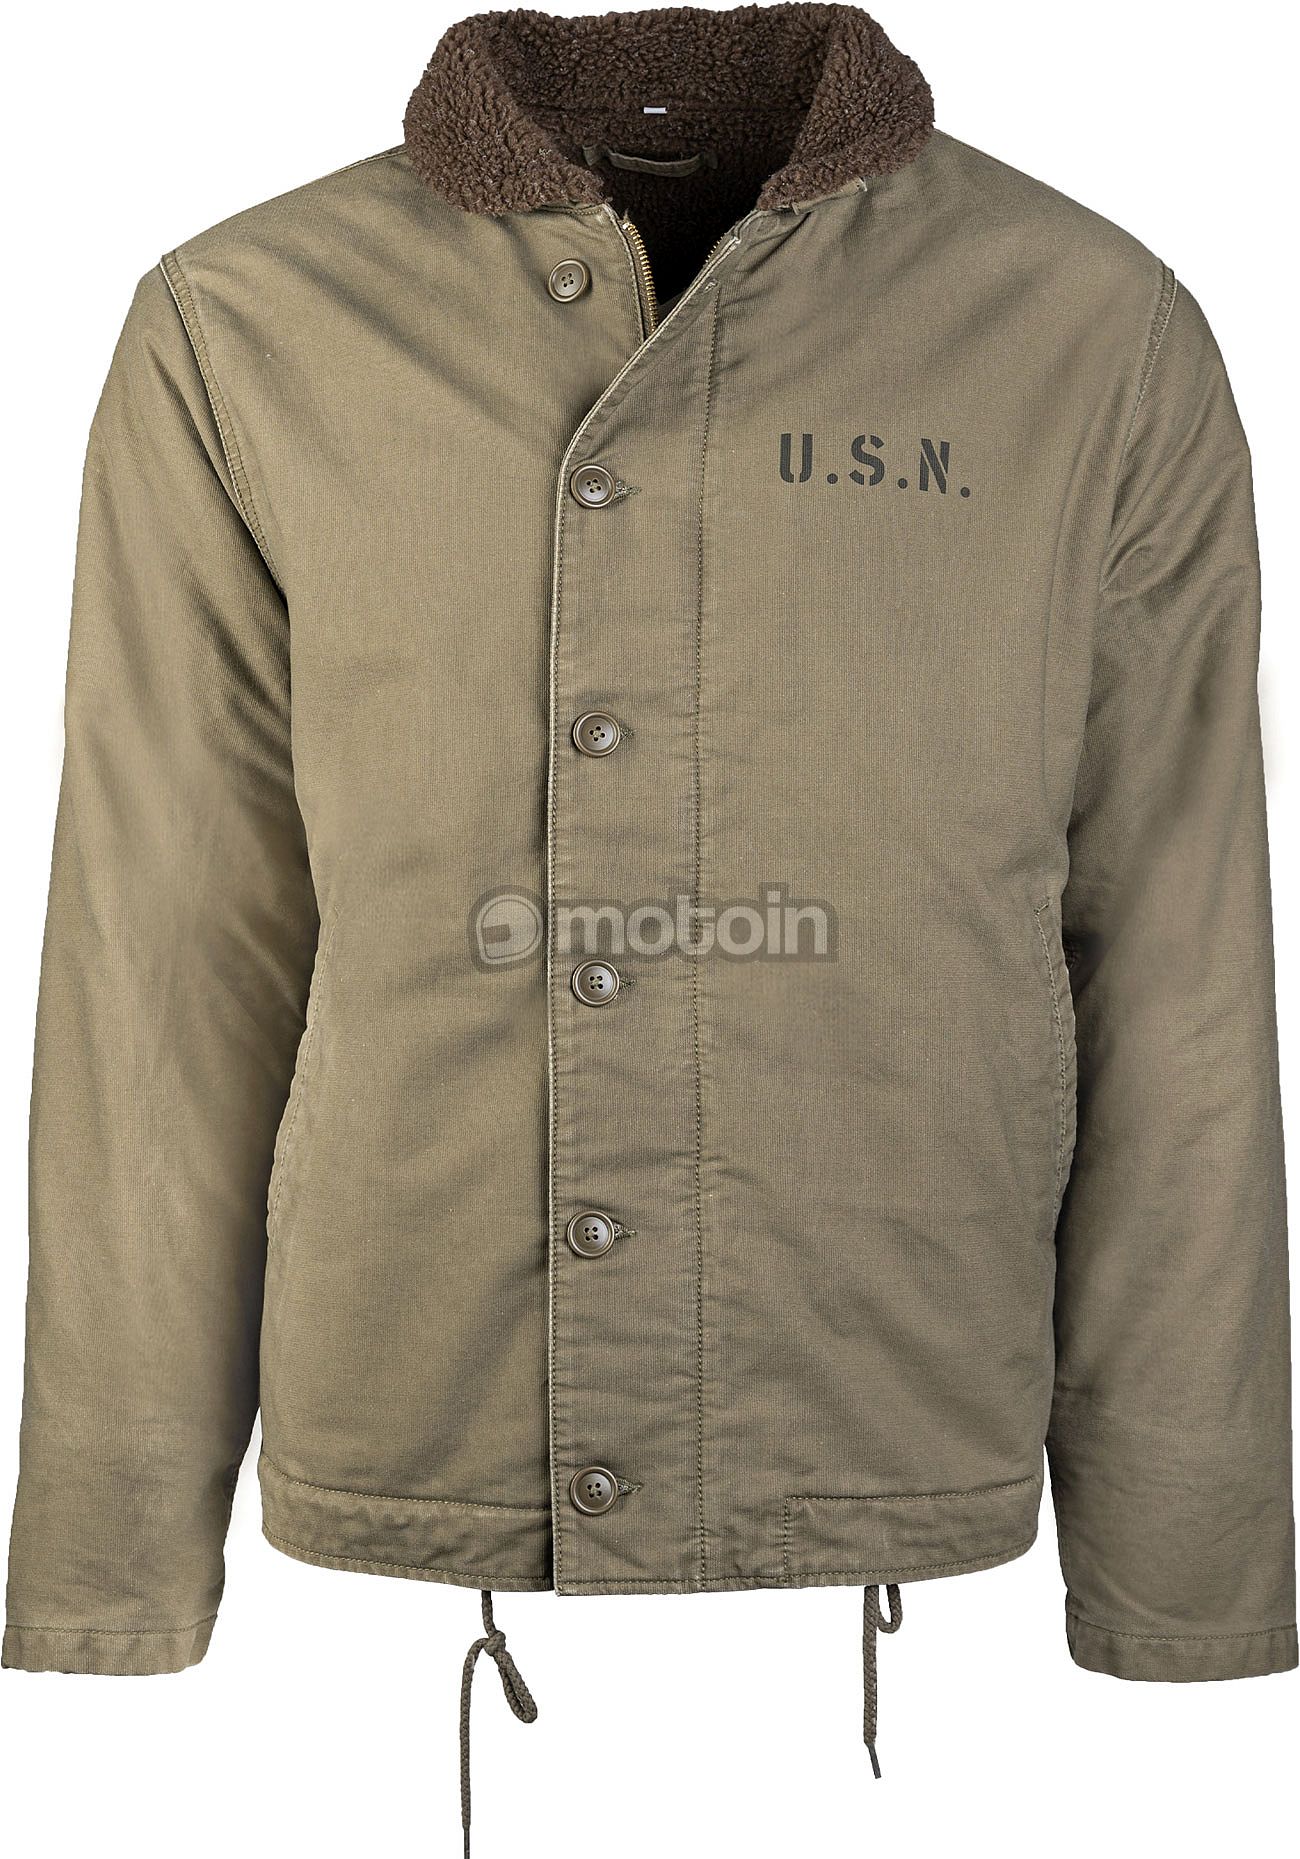 Navy N-1, Mil-Tec jacket Deck US textile